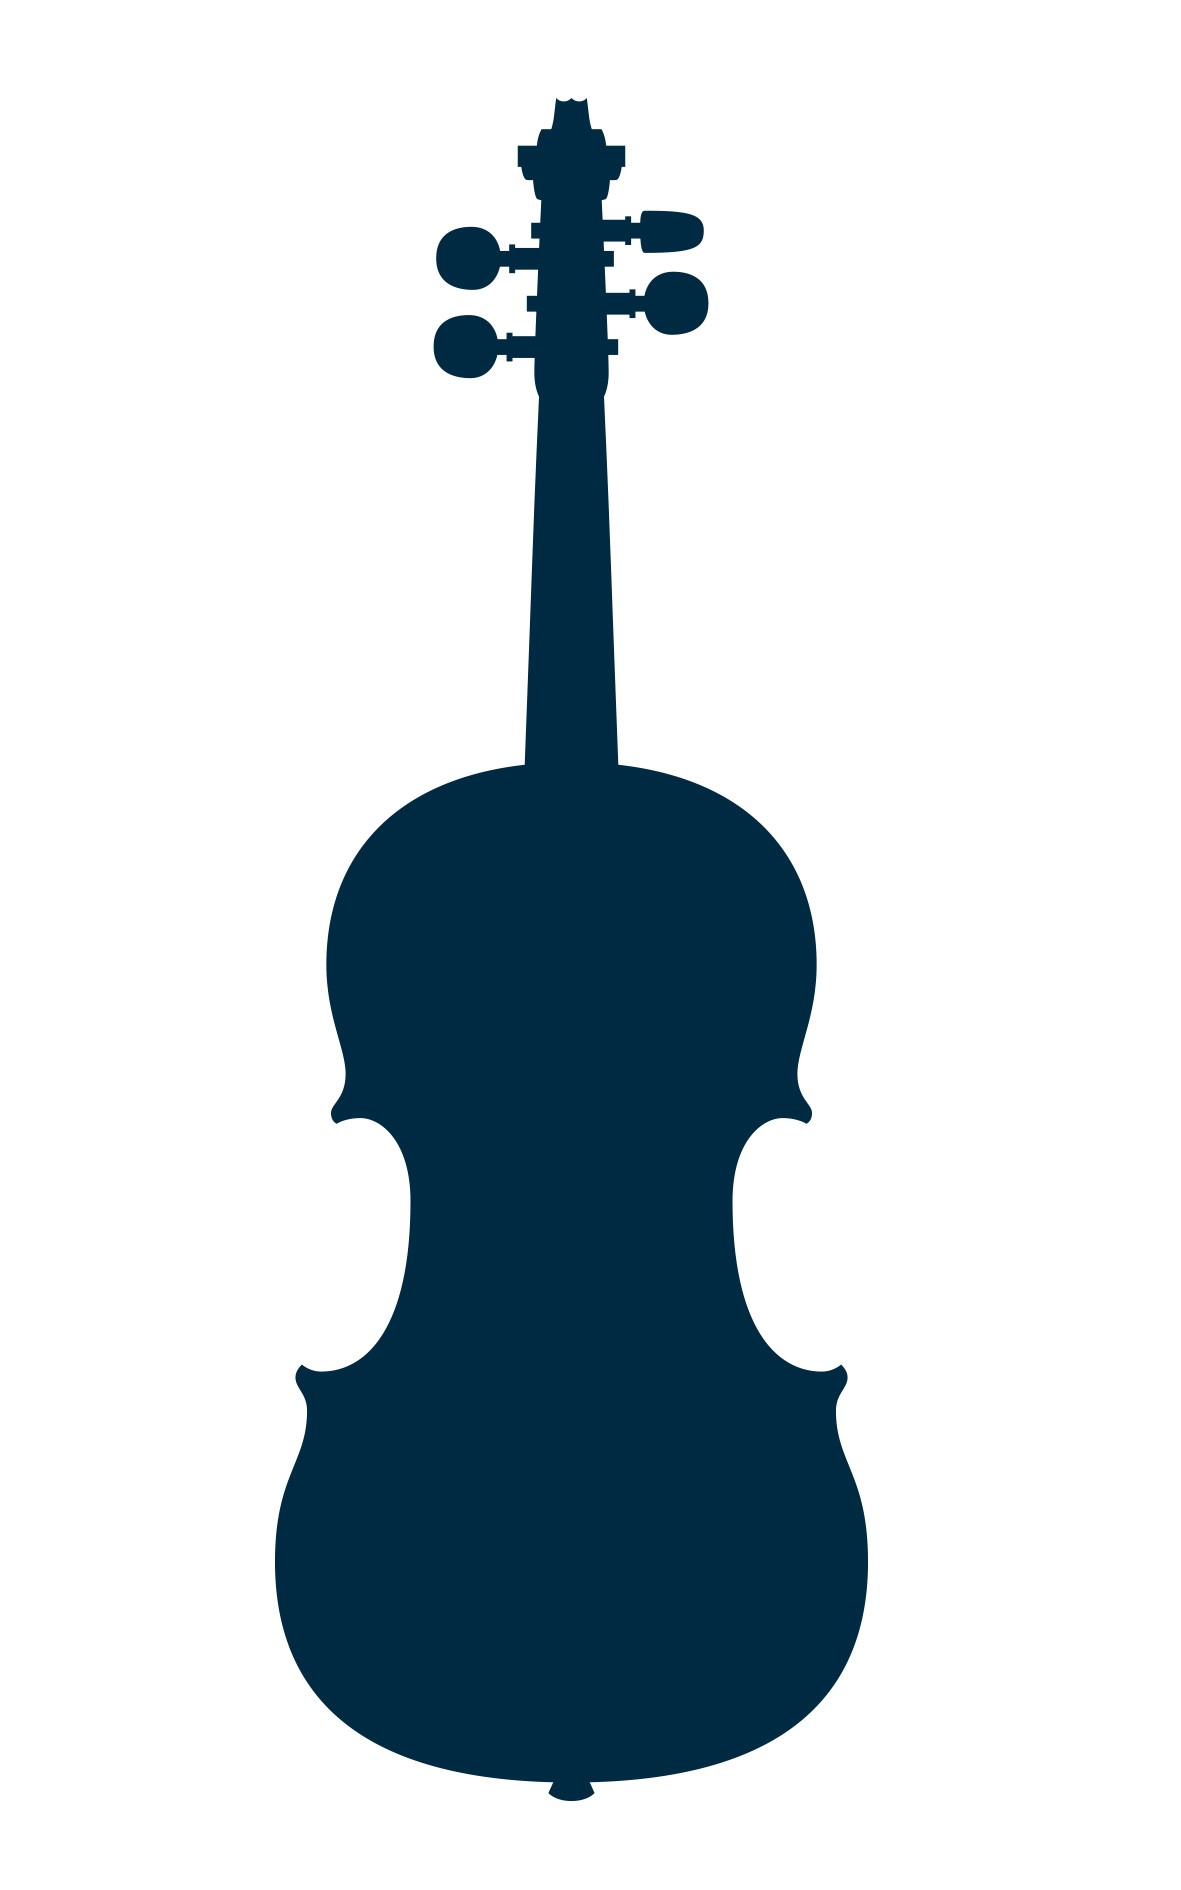 1924 Markneukirchen violin by Schuster & Co.